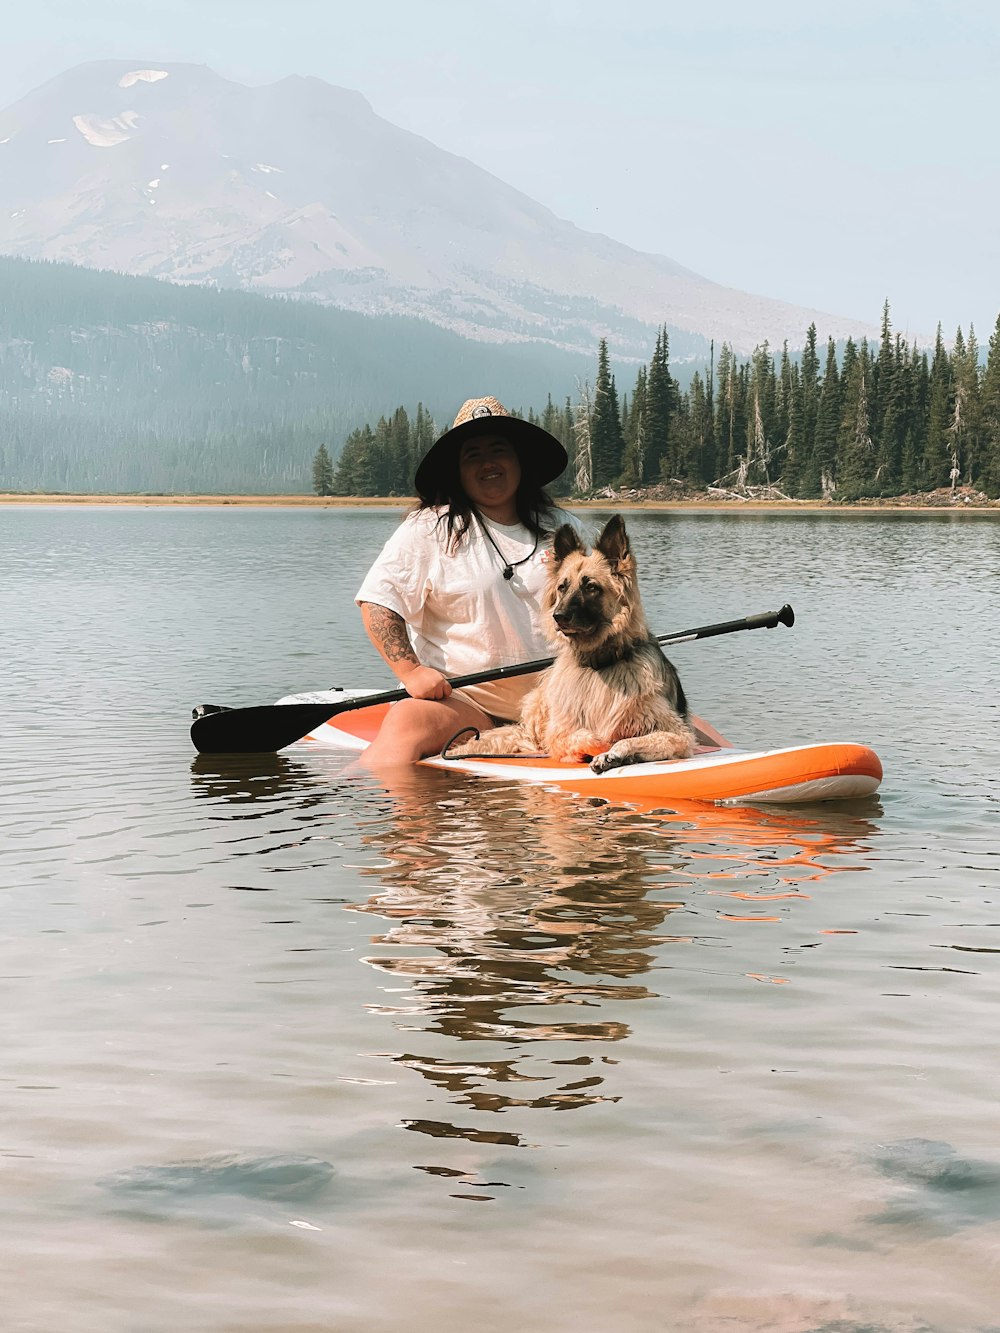 woman in white shirt riding orange kayak on lake during daytime